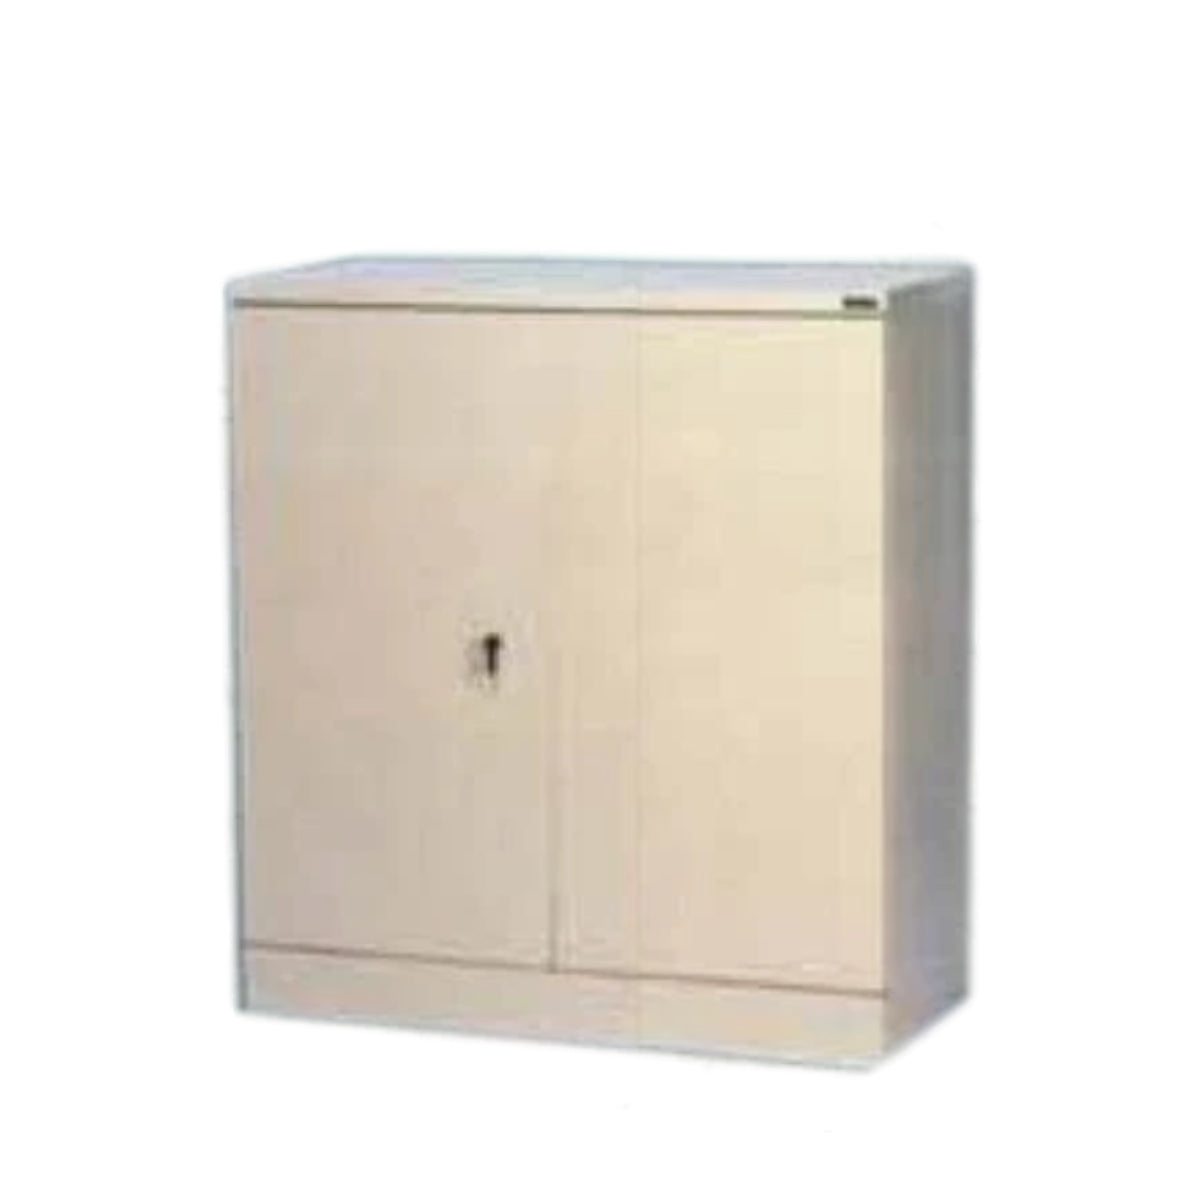 Rexel Filing Cupboard, 101.6x91.8x40 cm, Swing Door, Beige